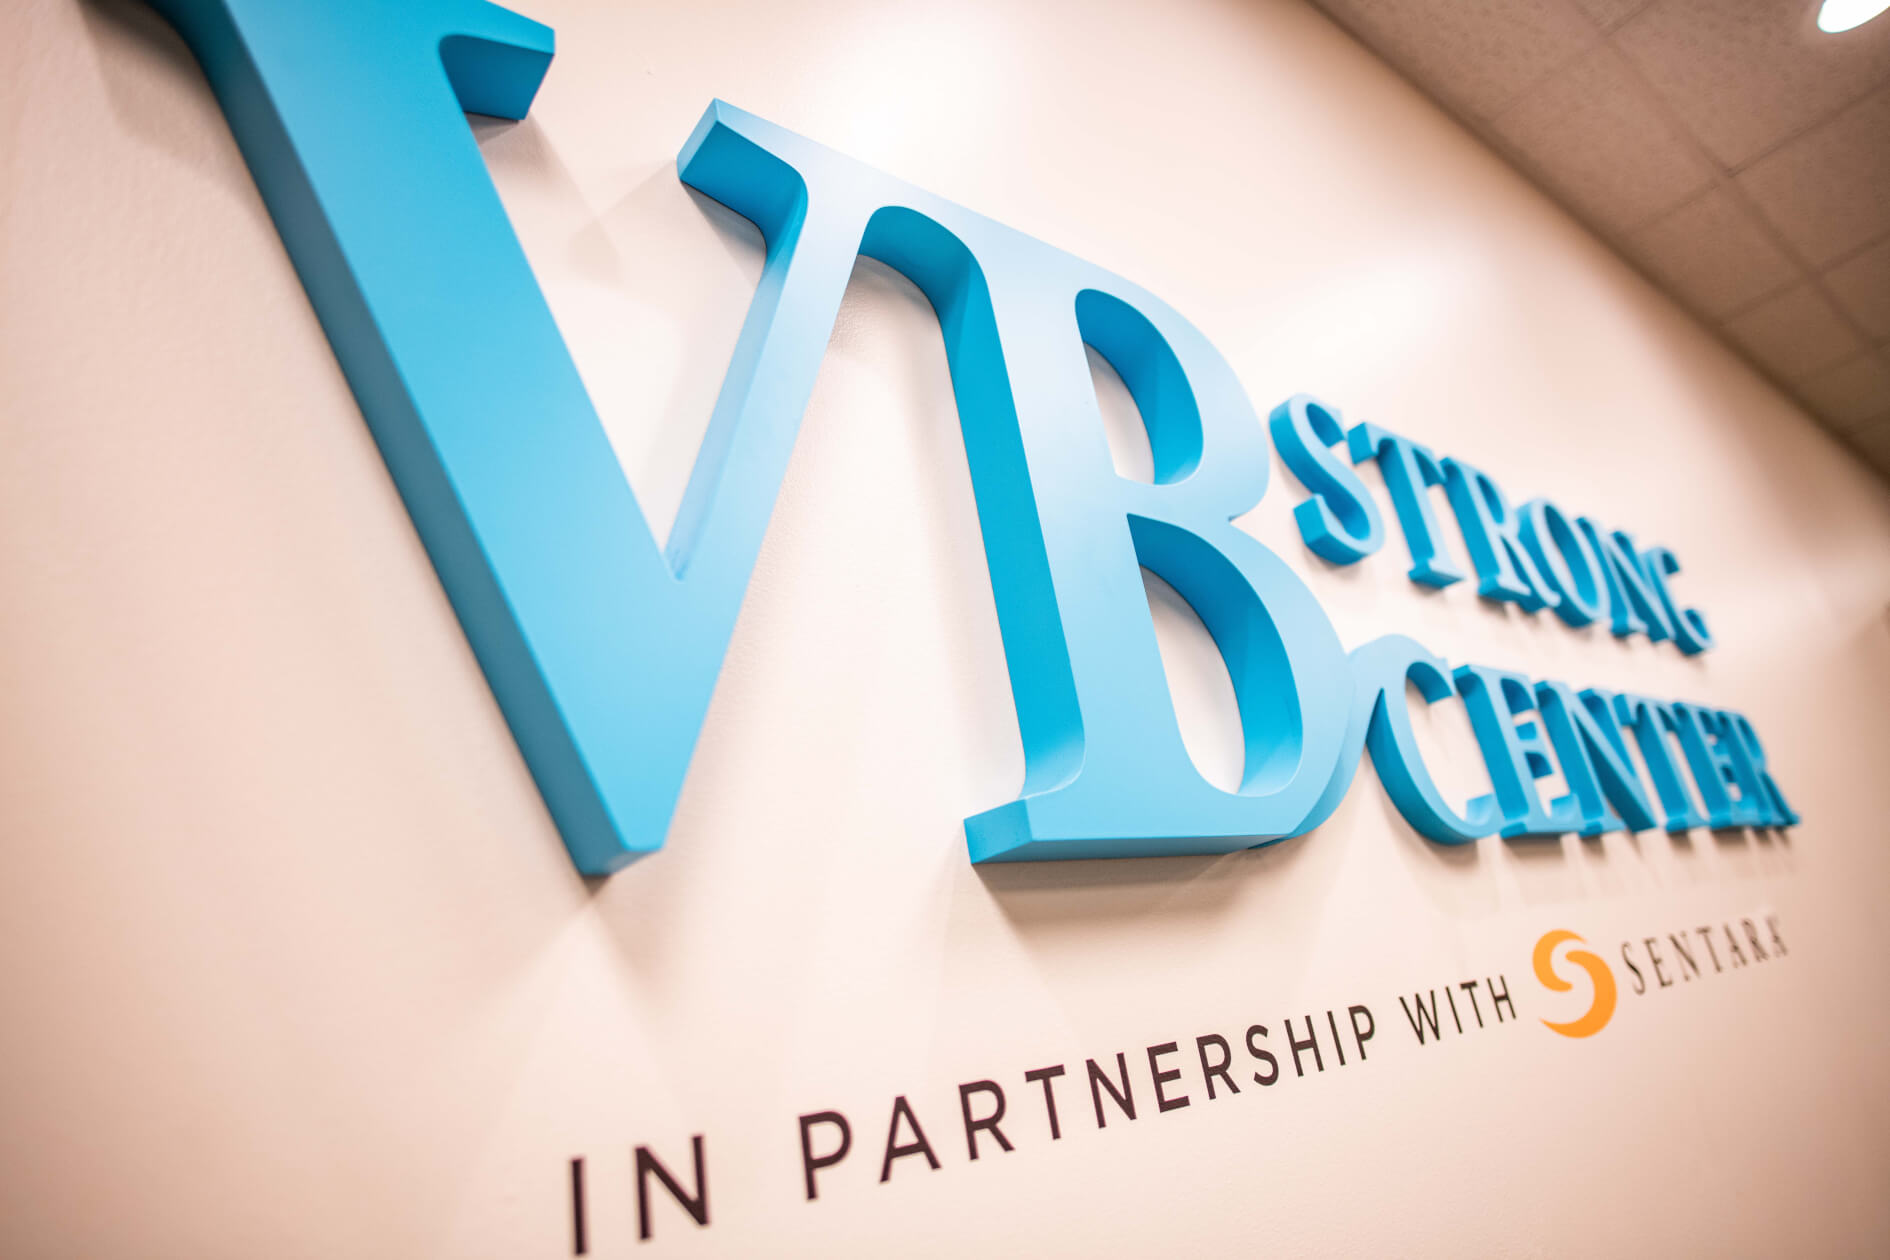 VB Strong Center